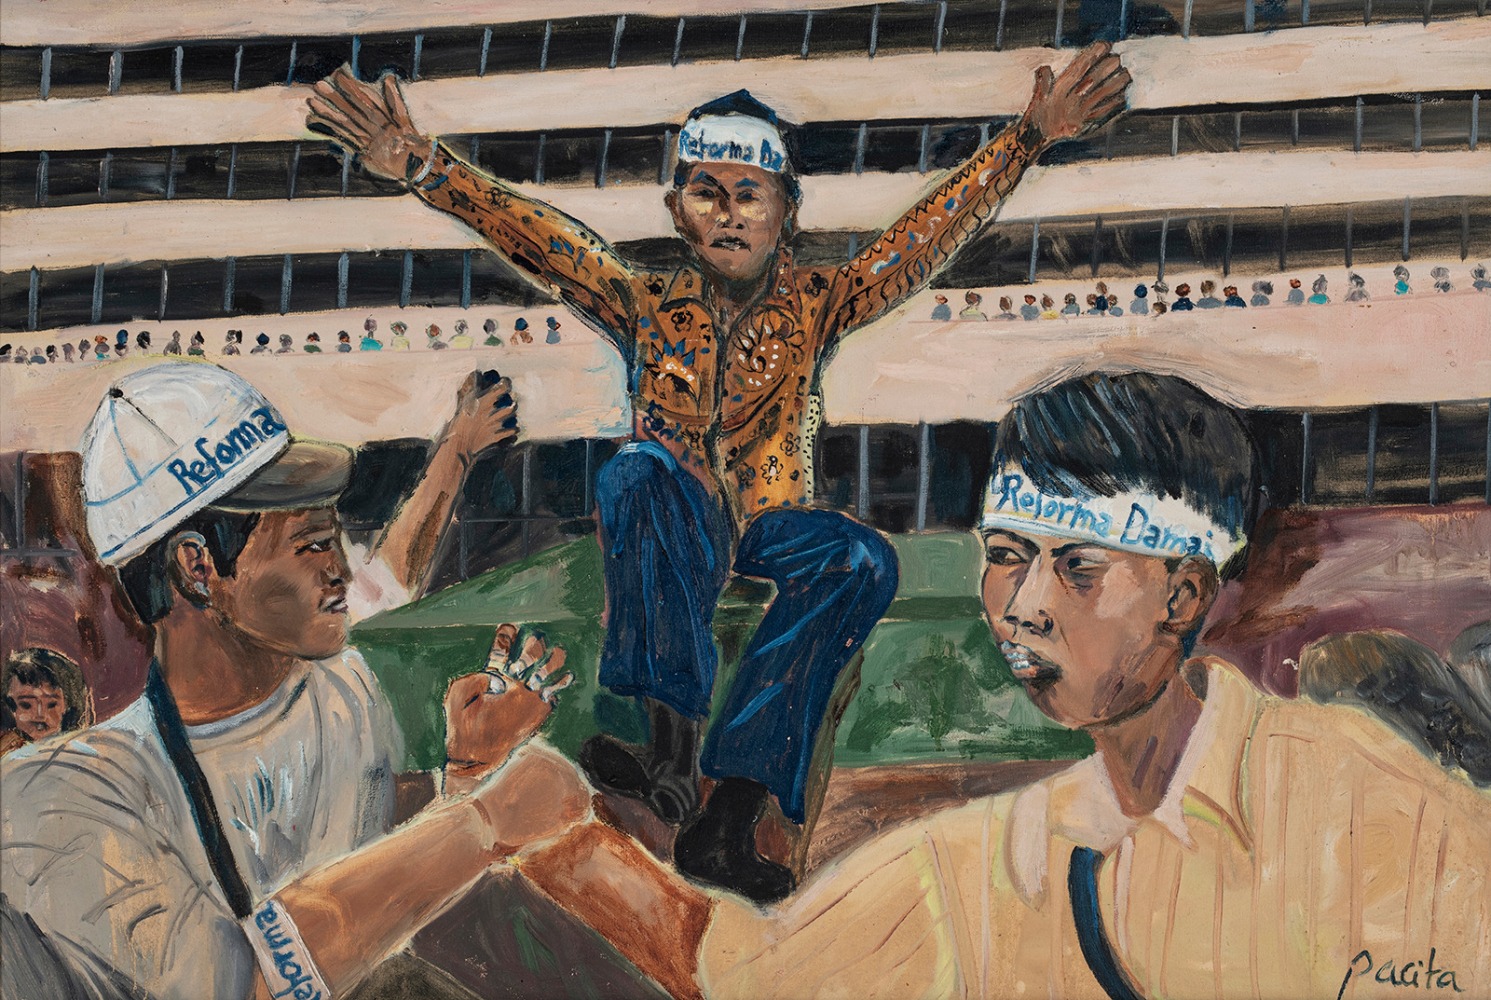 Amien Rais

Social Realism Journey-Jakarta Riots 1998

Oil on canvas

1998

24 x 35 inches

60 x 90 cm